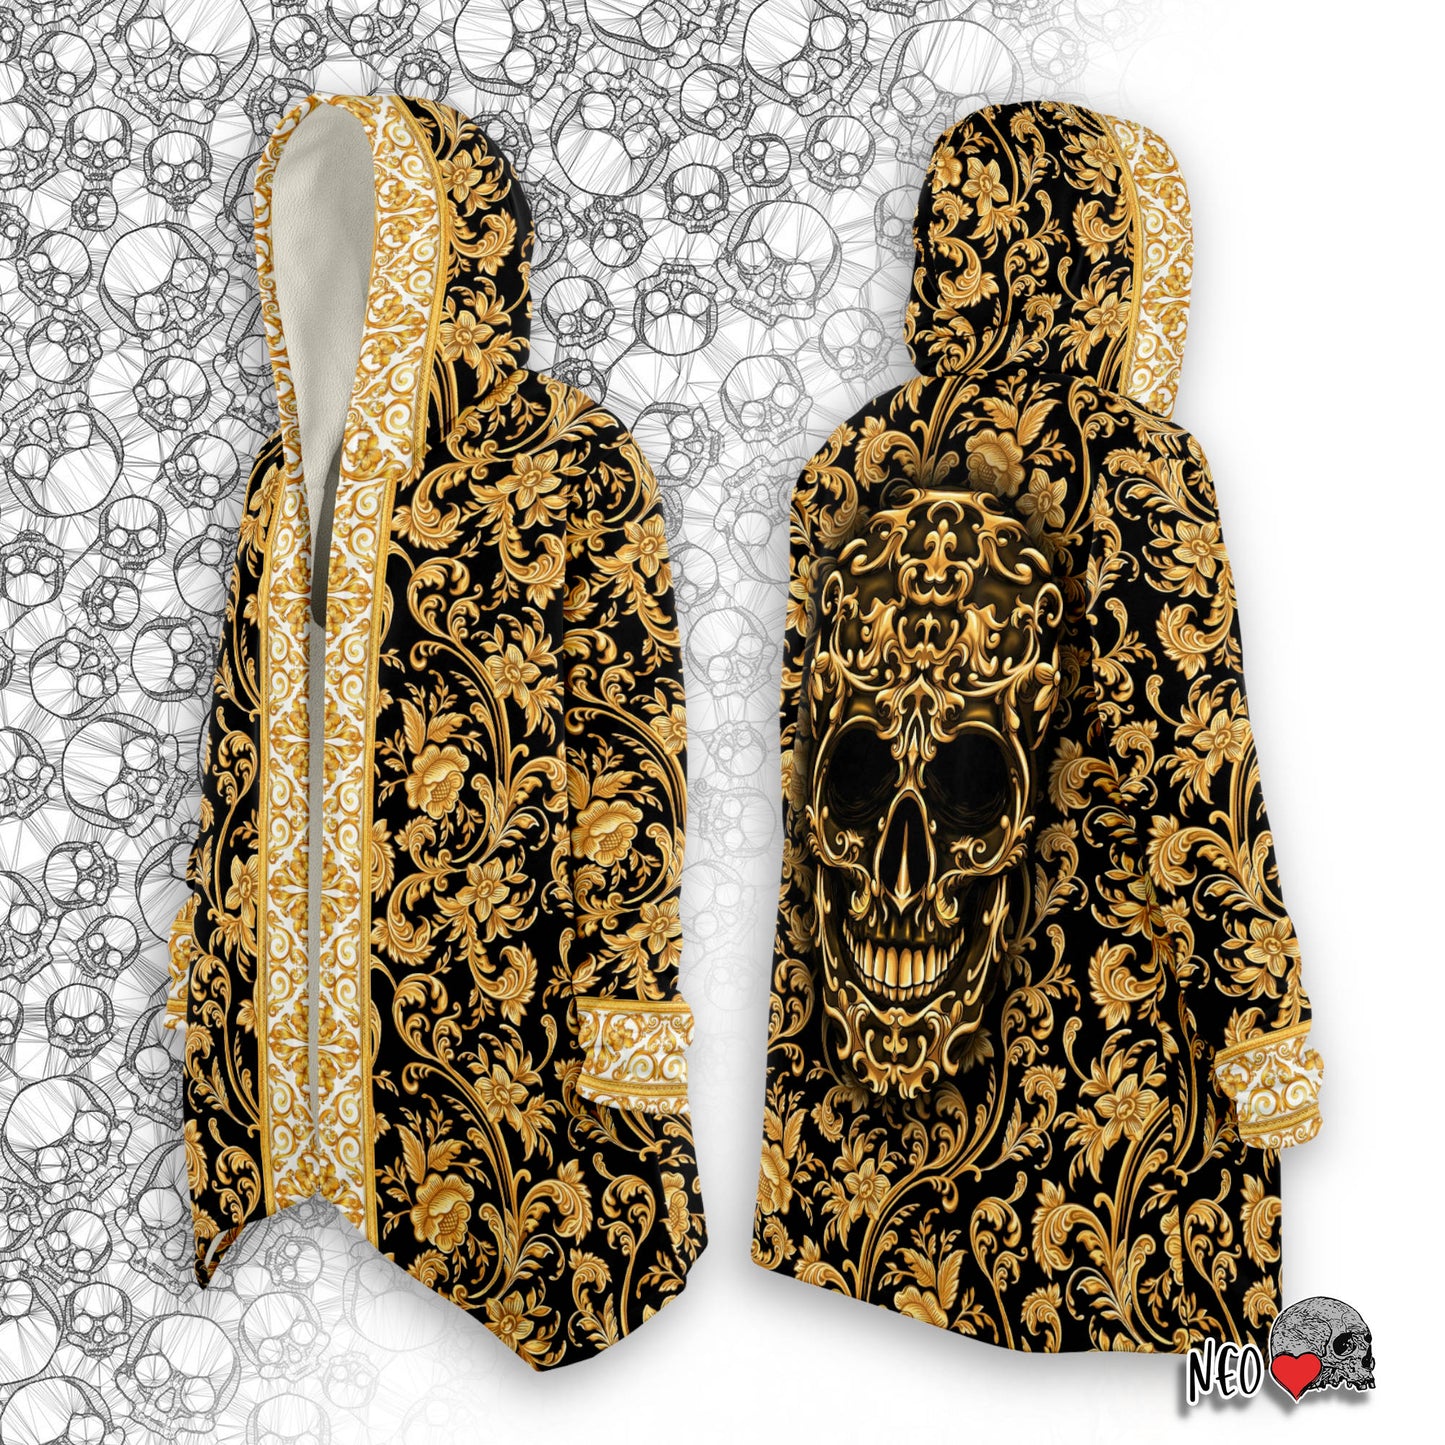 Golden Age Skull Cloak - NeoSkull